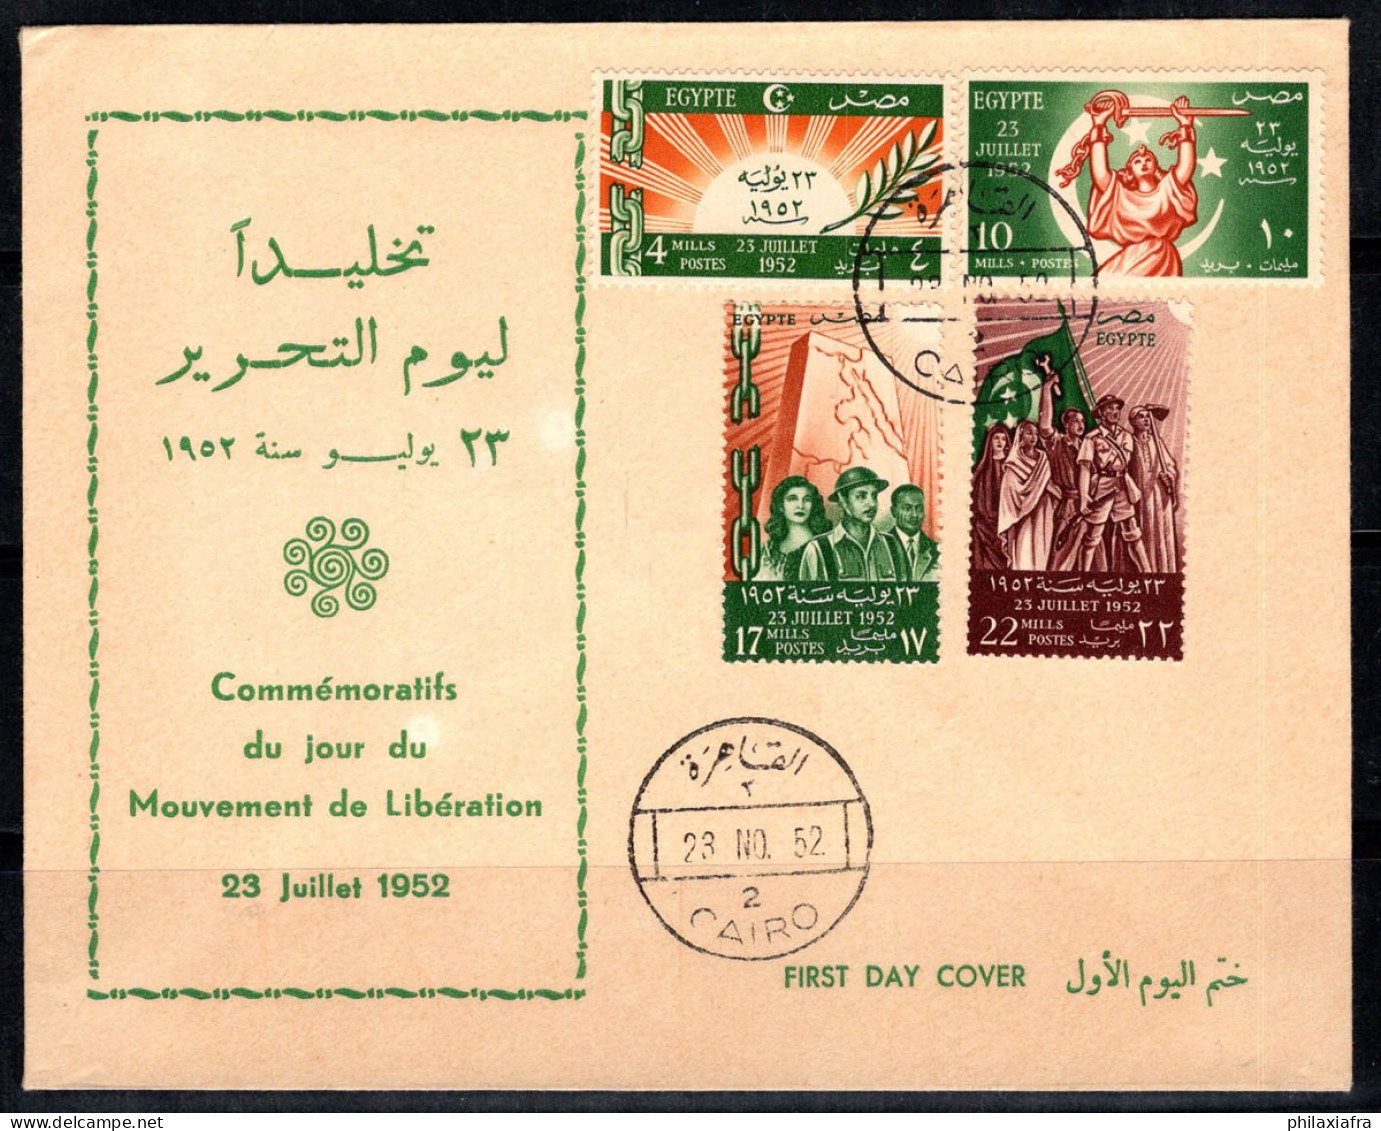 Égypte 1952 Premier Jour 100% Neuve Le Caire - Storia Postale